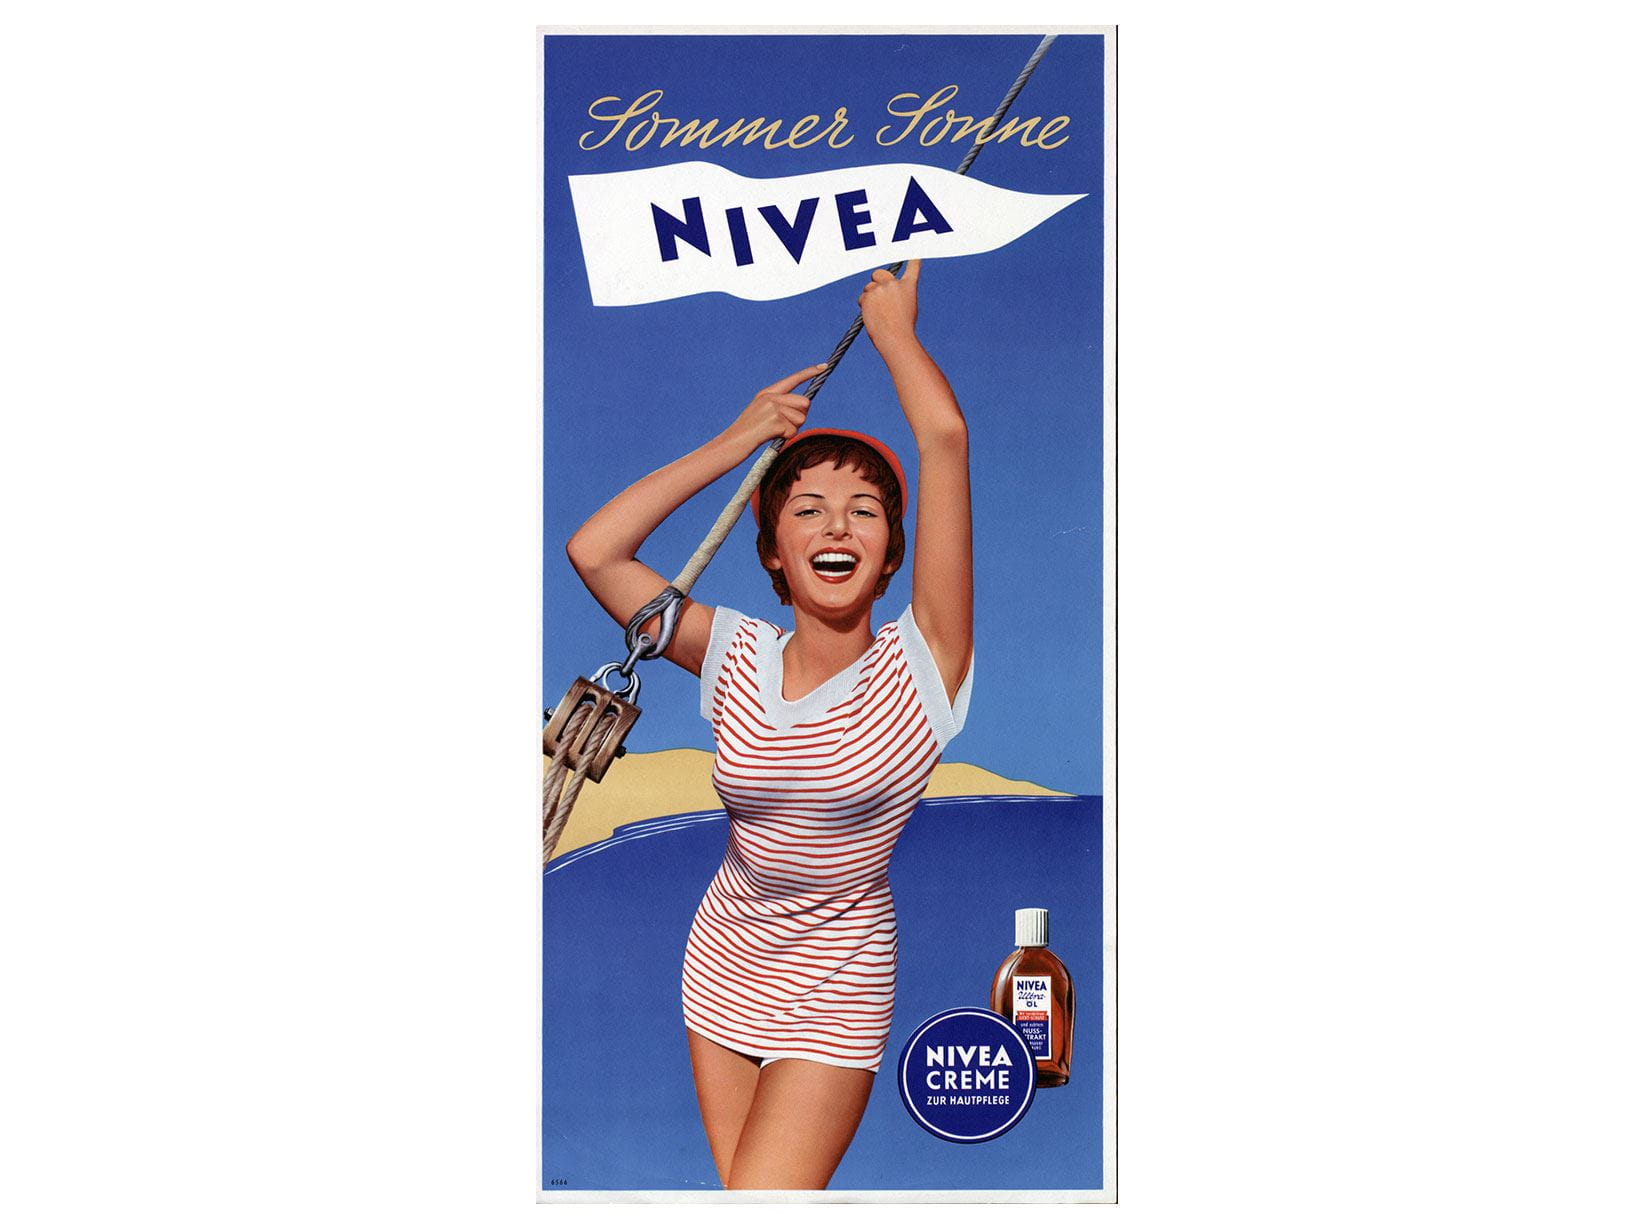 werbeanzeige-nivea-sommer-sonne-1955